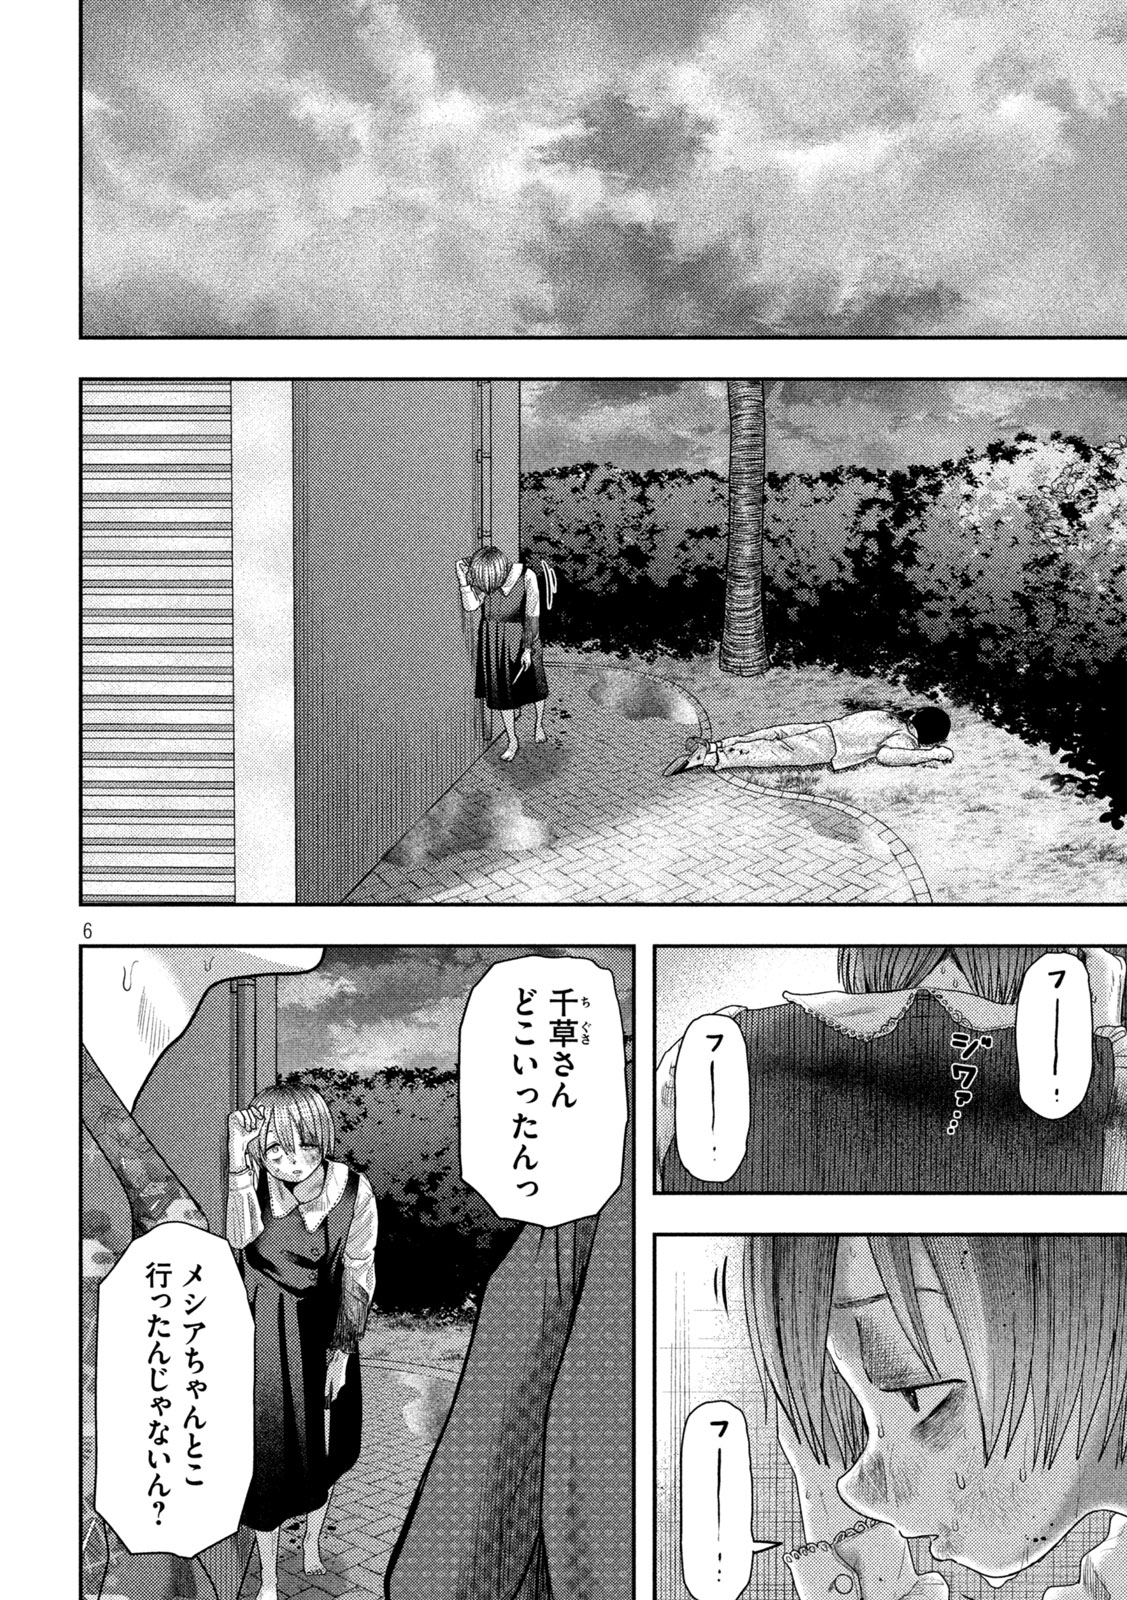 Nezumi no Koi - Chapter 24 - Page 6